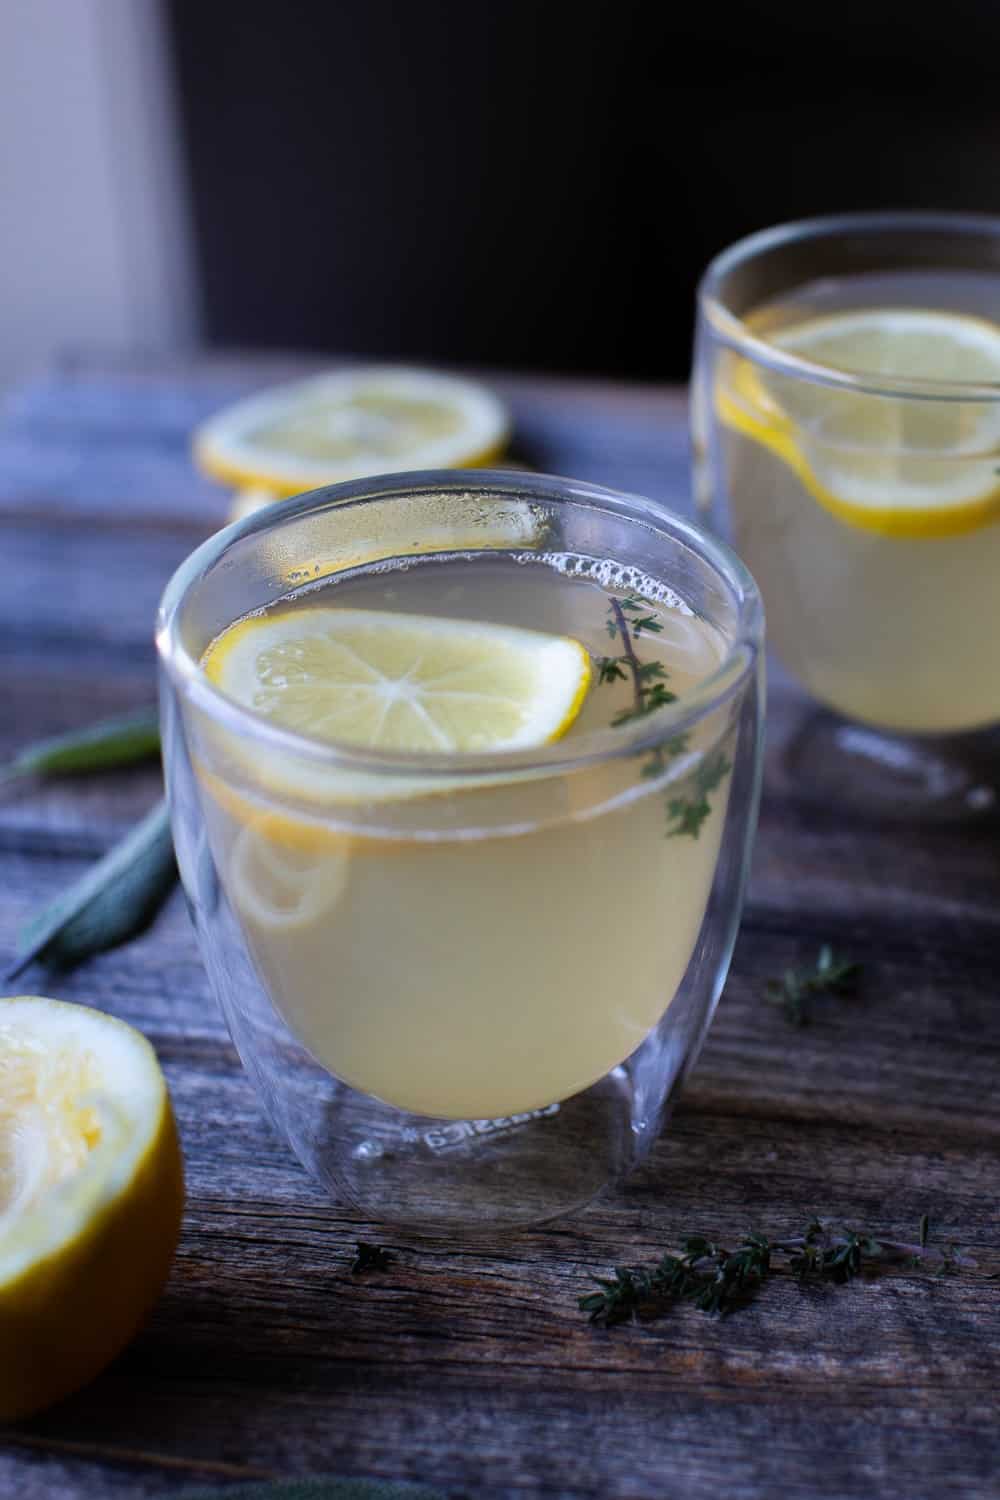 ginger and lemon tea